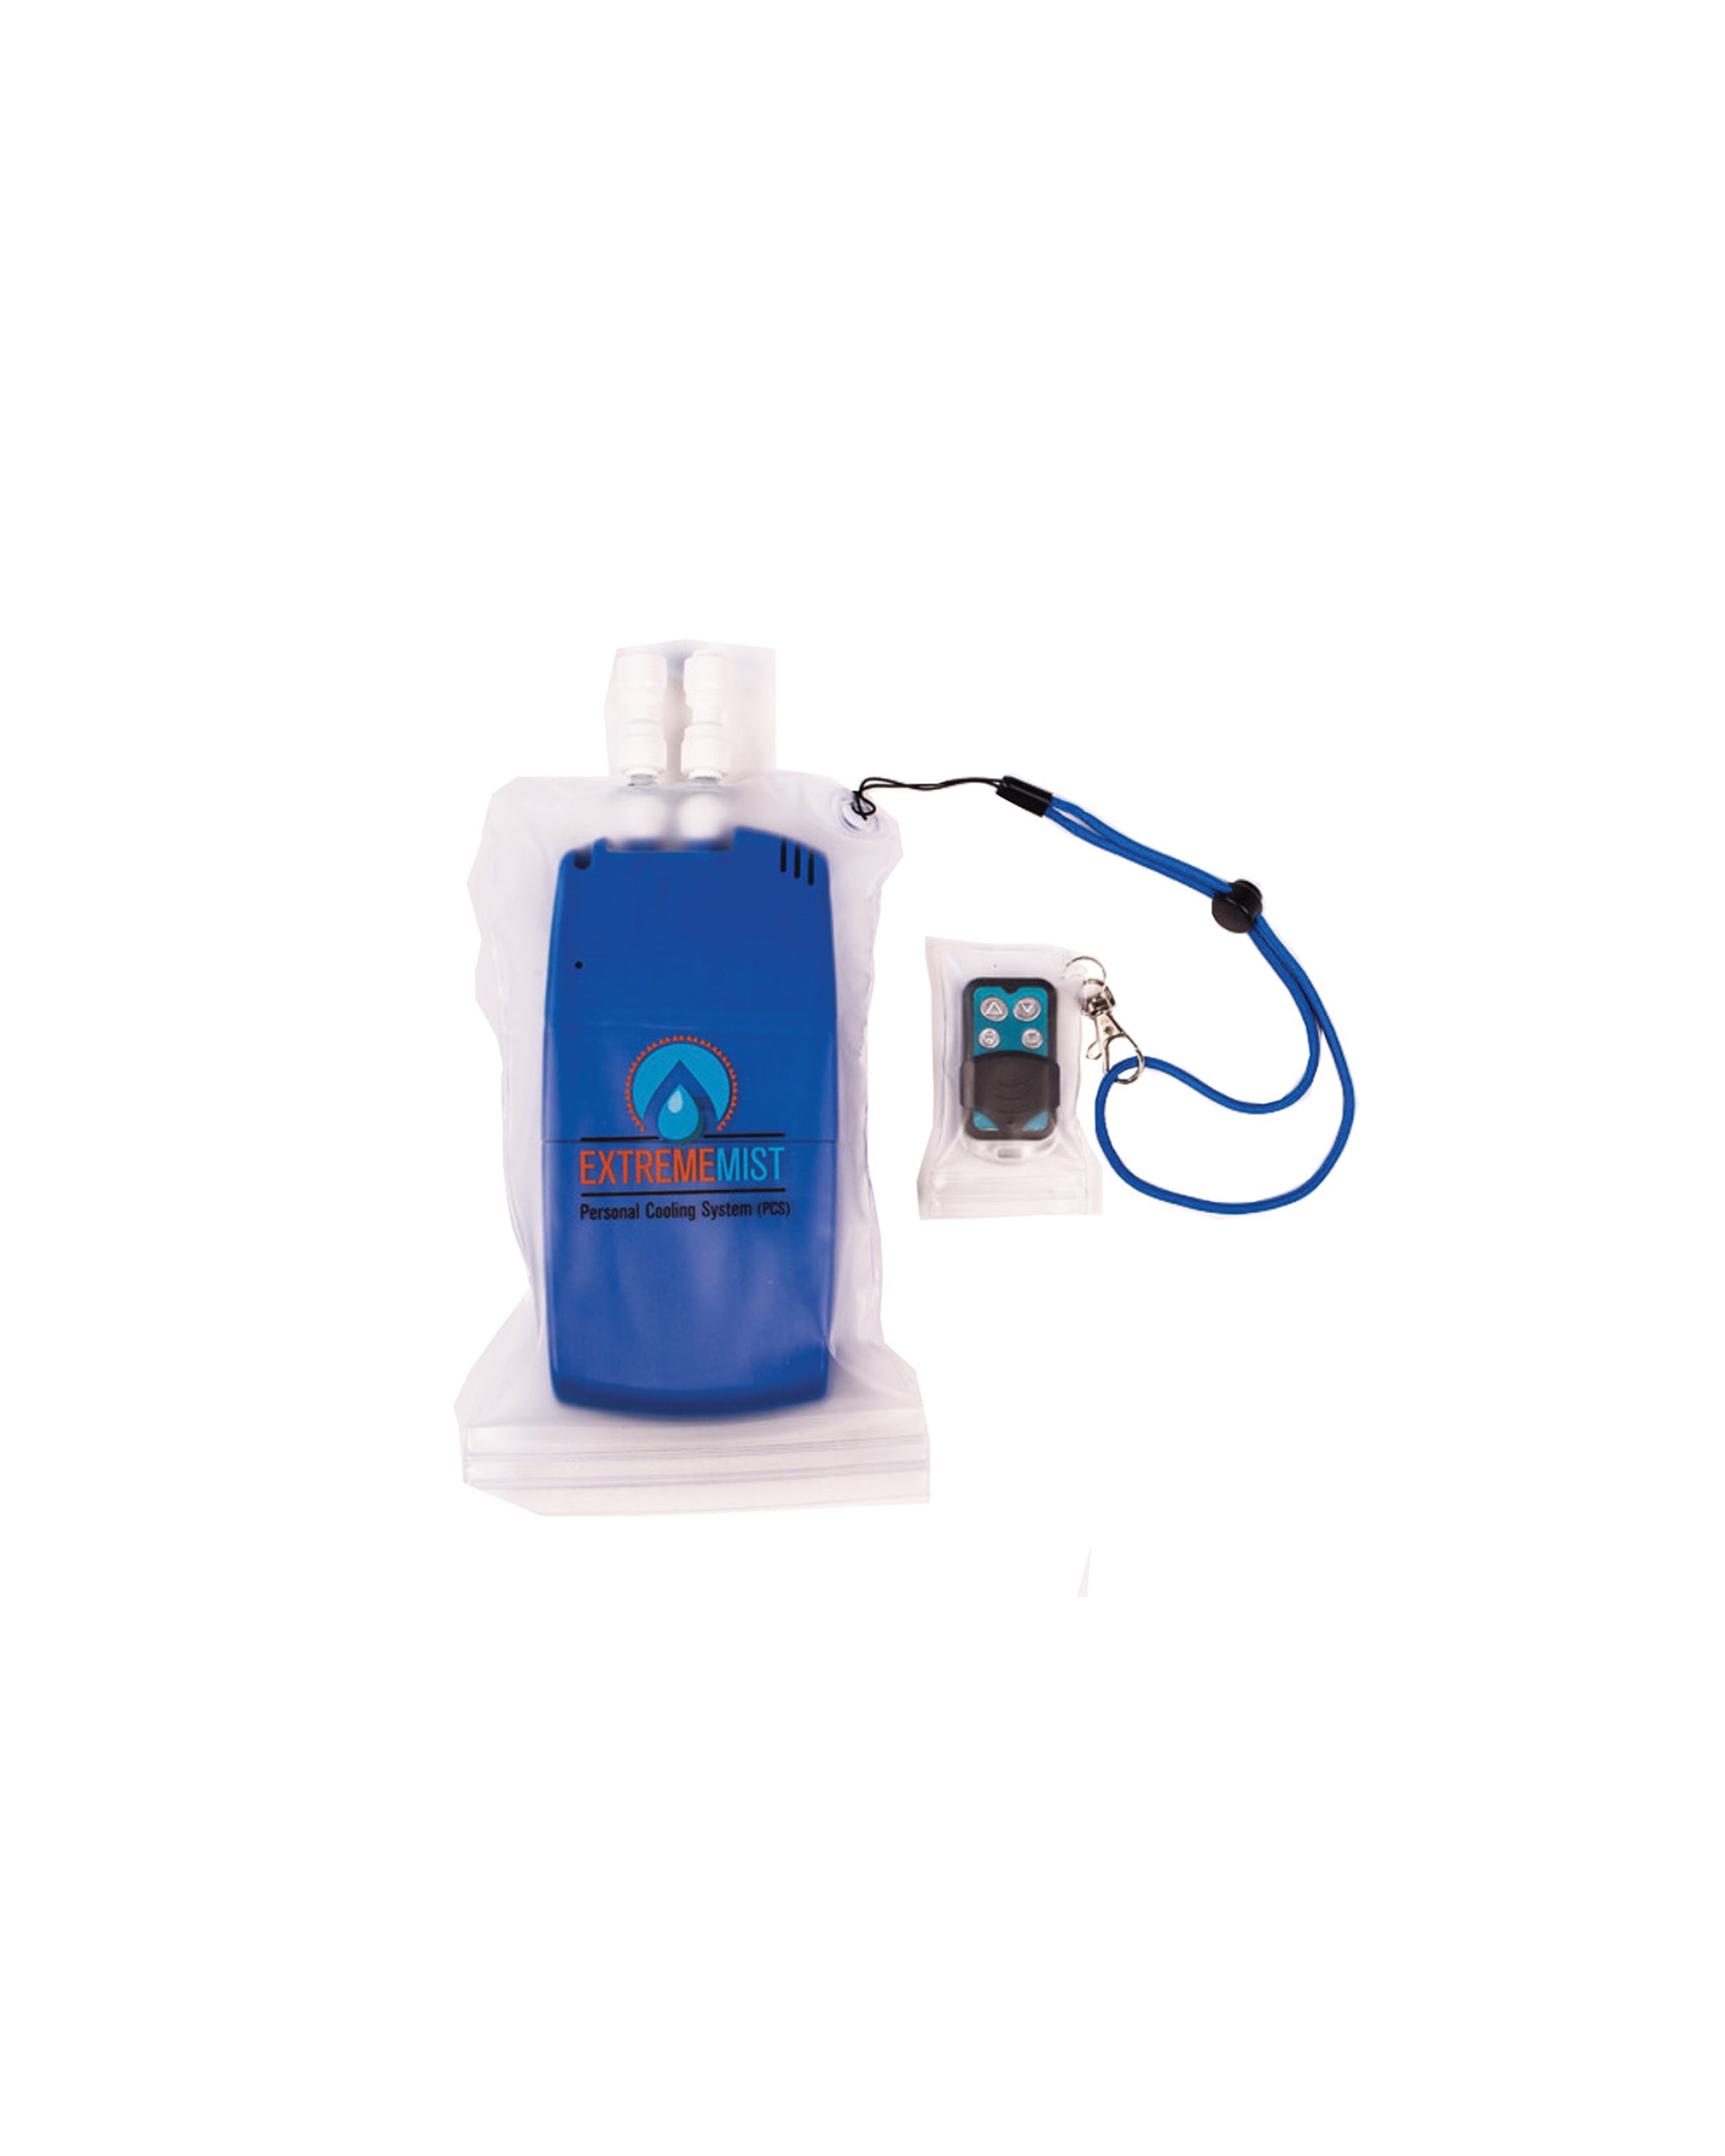 waterproof mist pump bag and waterproof wireless remote bag